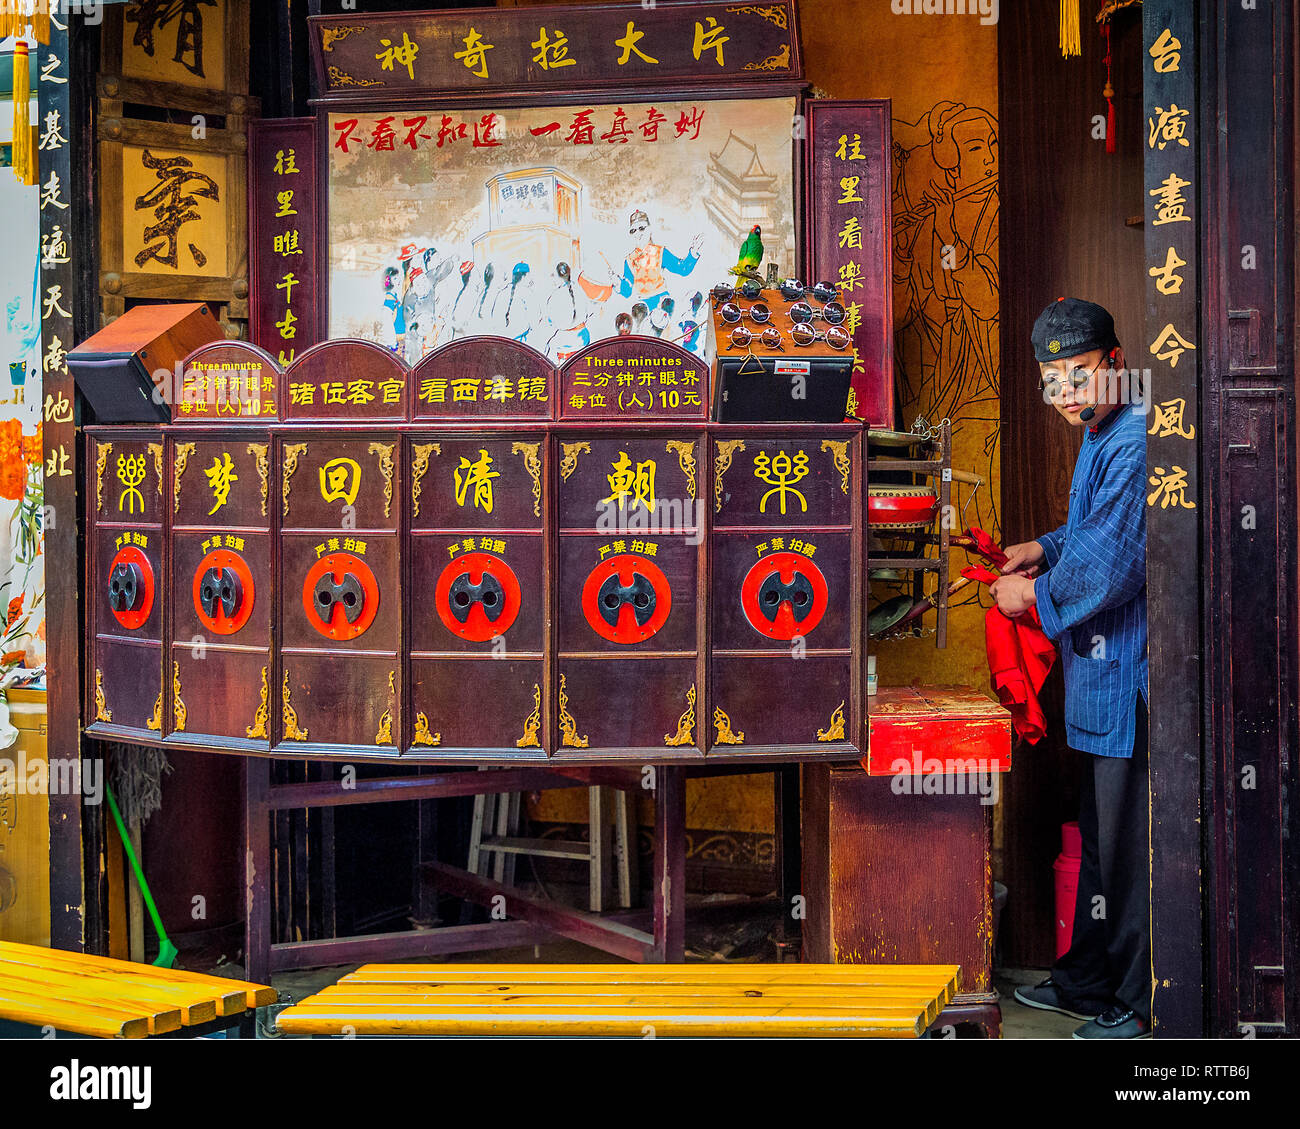 Layang Pian o Xiyang Jian es un peep show con un conjunto de imágenes teatrales que el showman tira en las posiciones de visualización con una cadena. Foto de stock